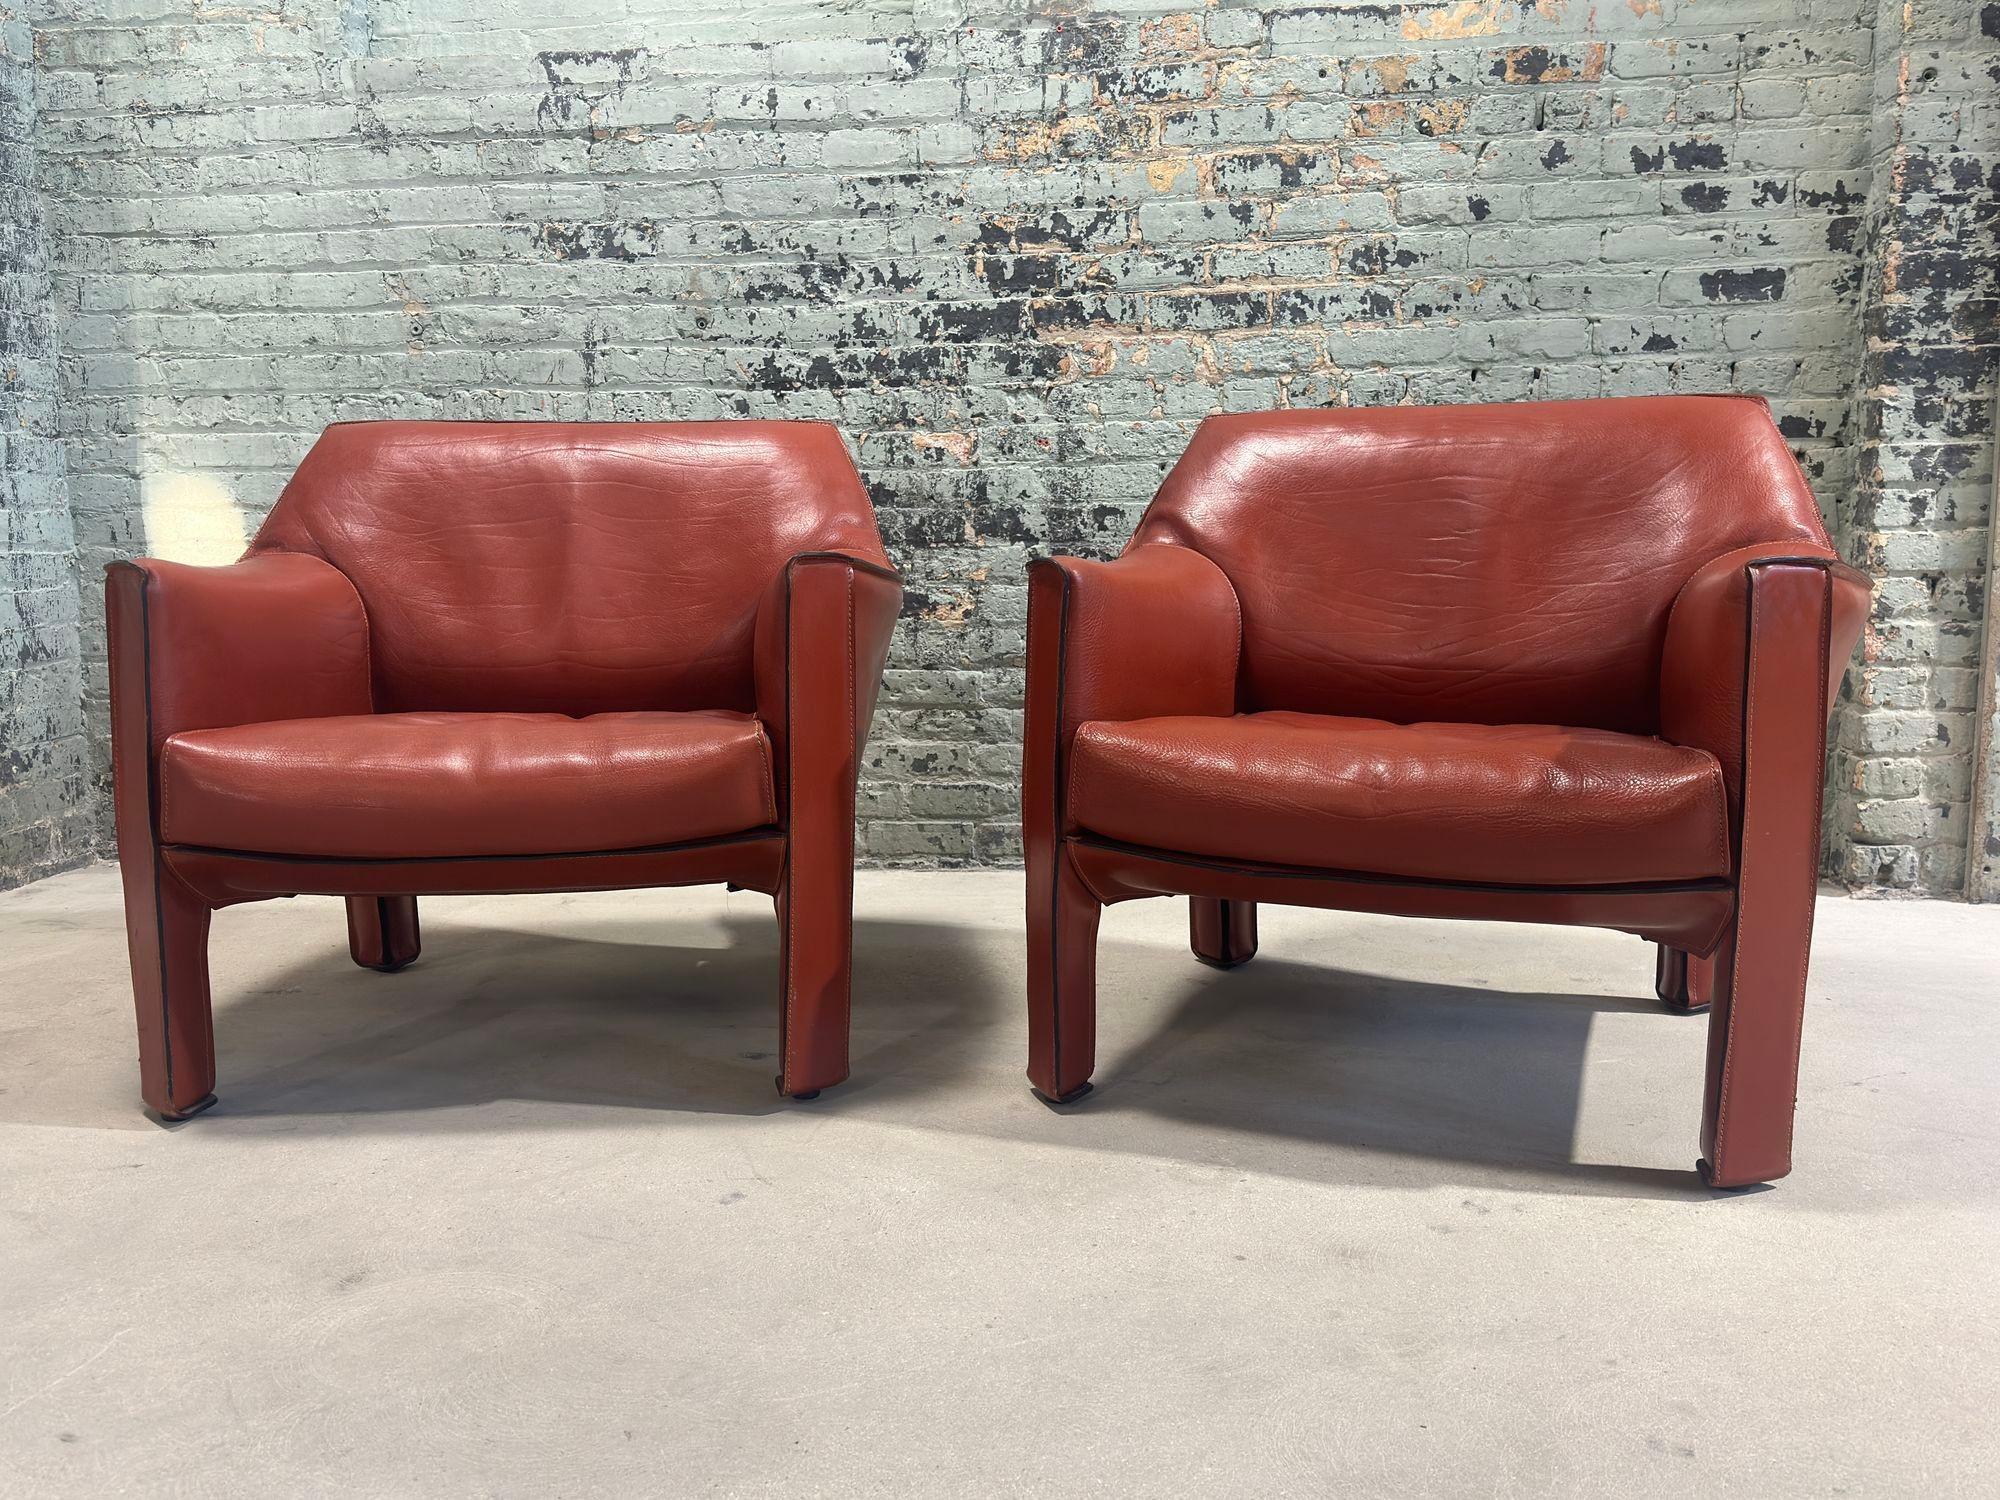 Mario Bellini Paire de chaises longues en cuir, modèle 415, Italie, années 1970. Excellent état d'origine. Construit en cadres d'acier soudés.
Les chaises sont conçues par Mario Bellini pour Cassina, en Italie.